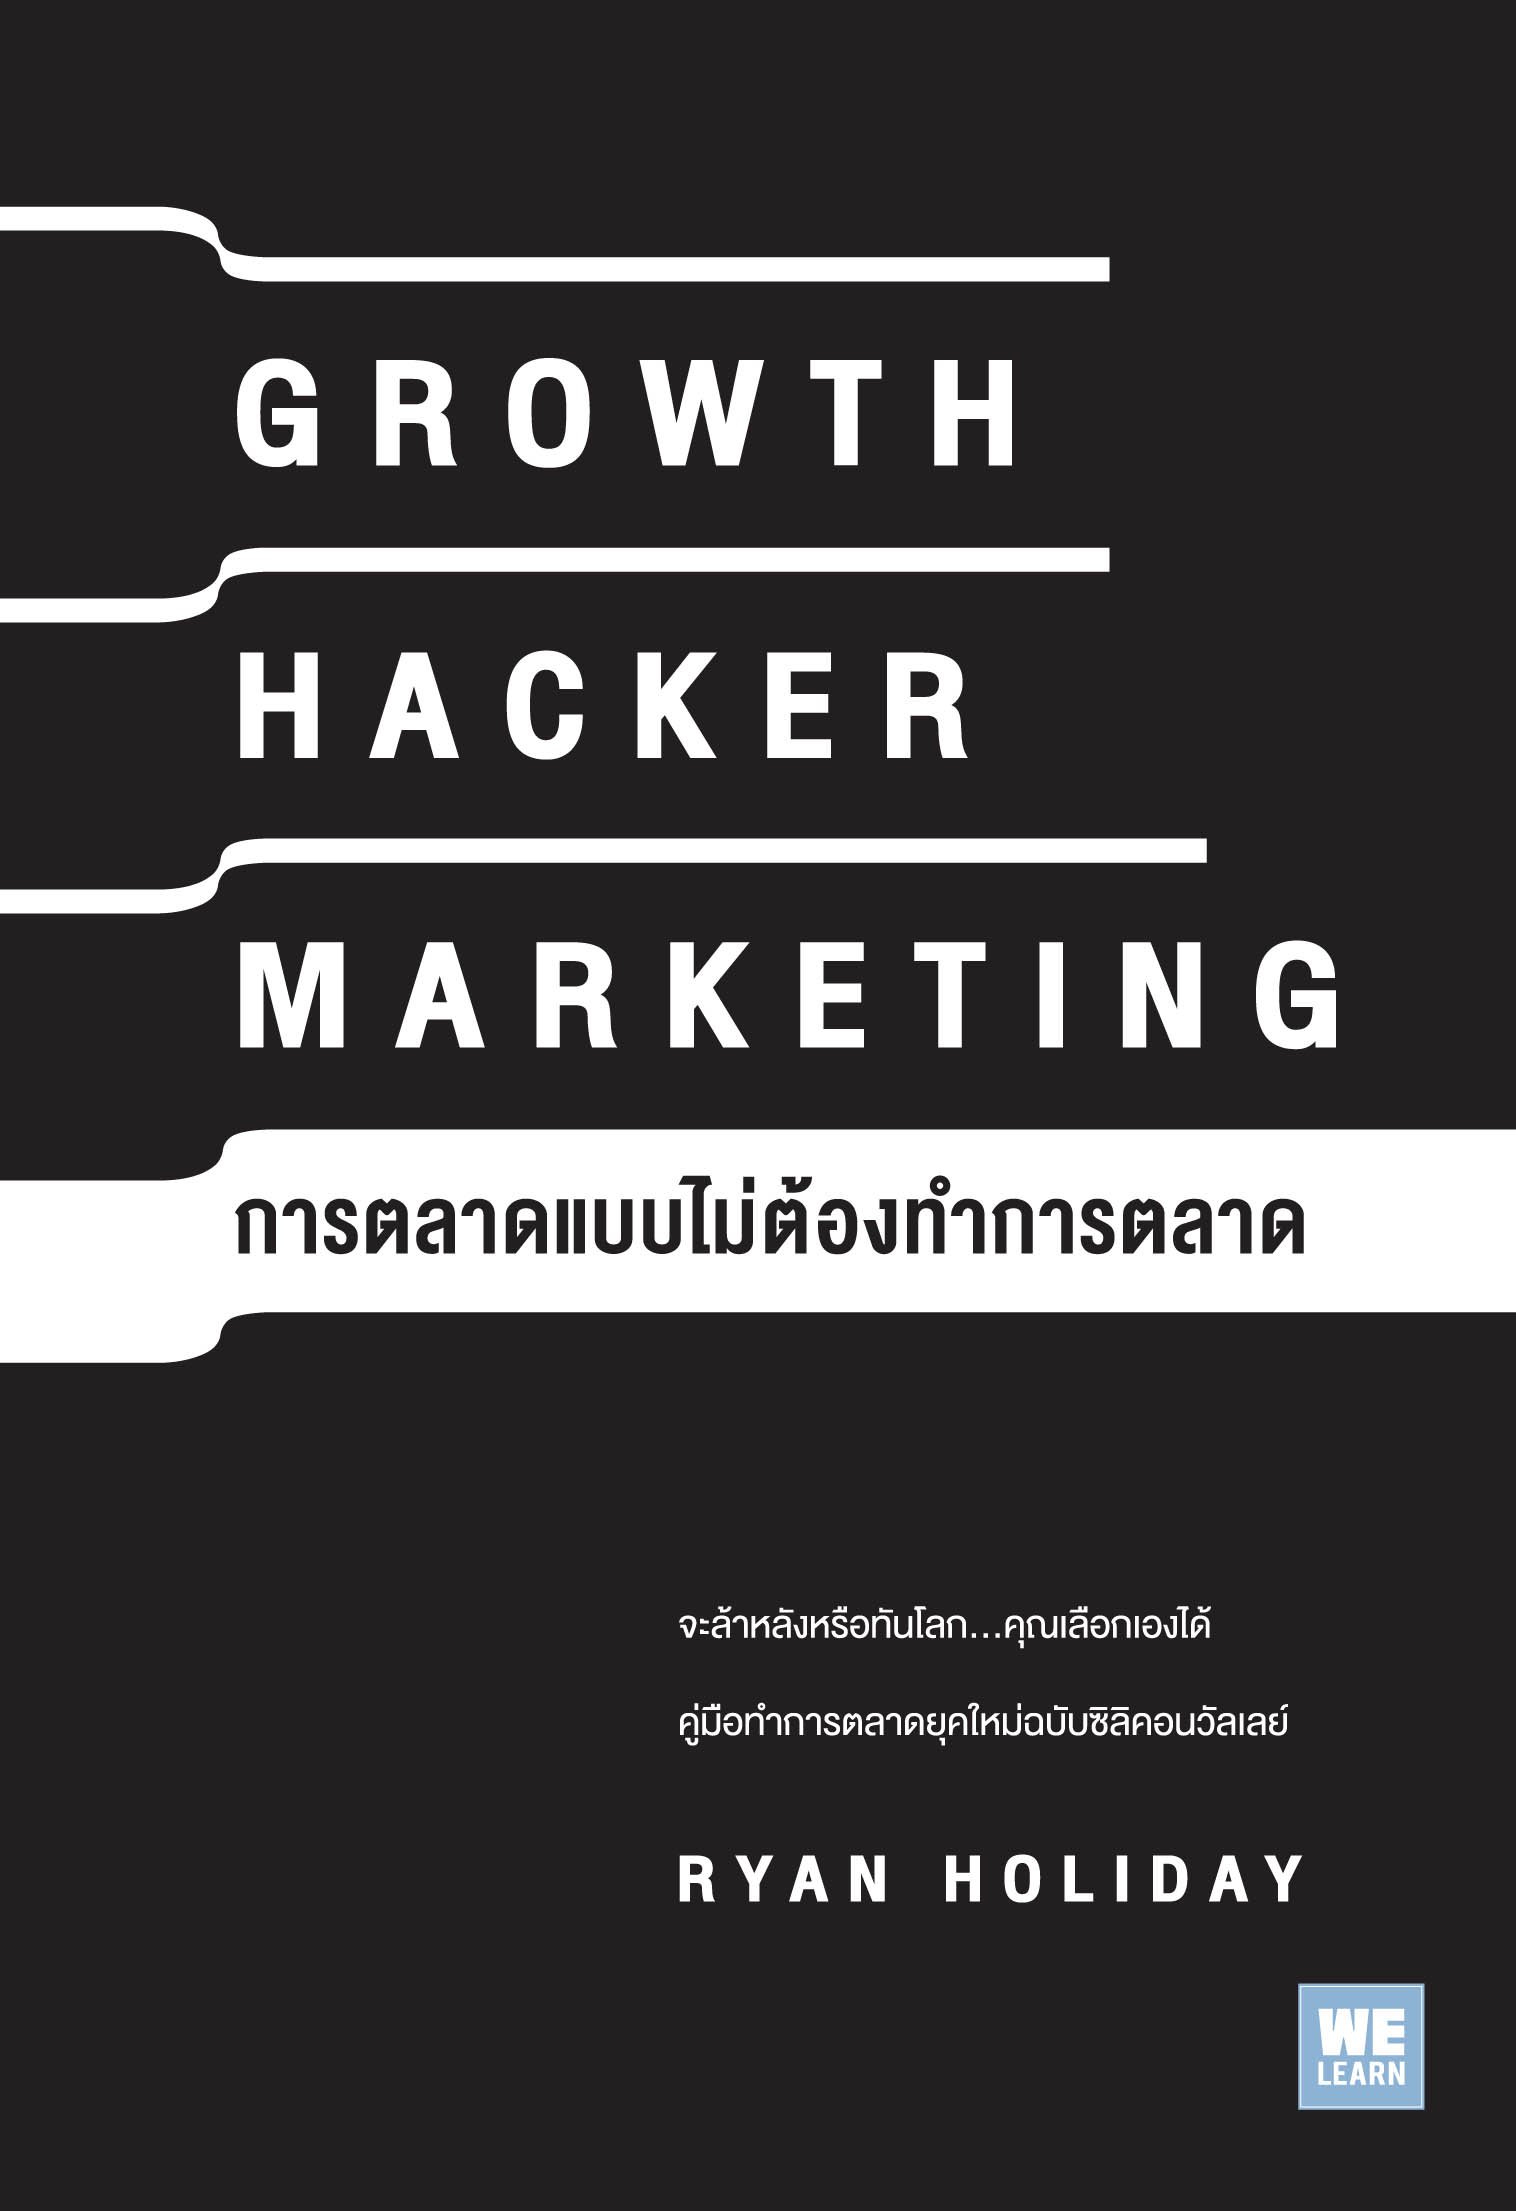 การตลาดแบบไม่ต้องทำการตลาด  (Growth Hacker Marketing)